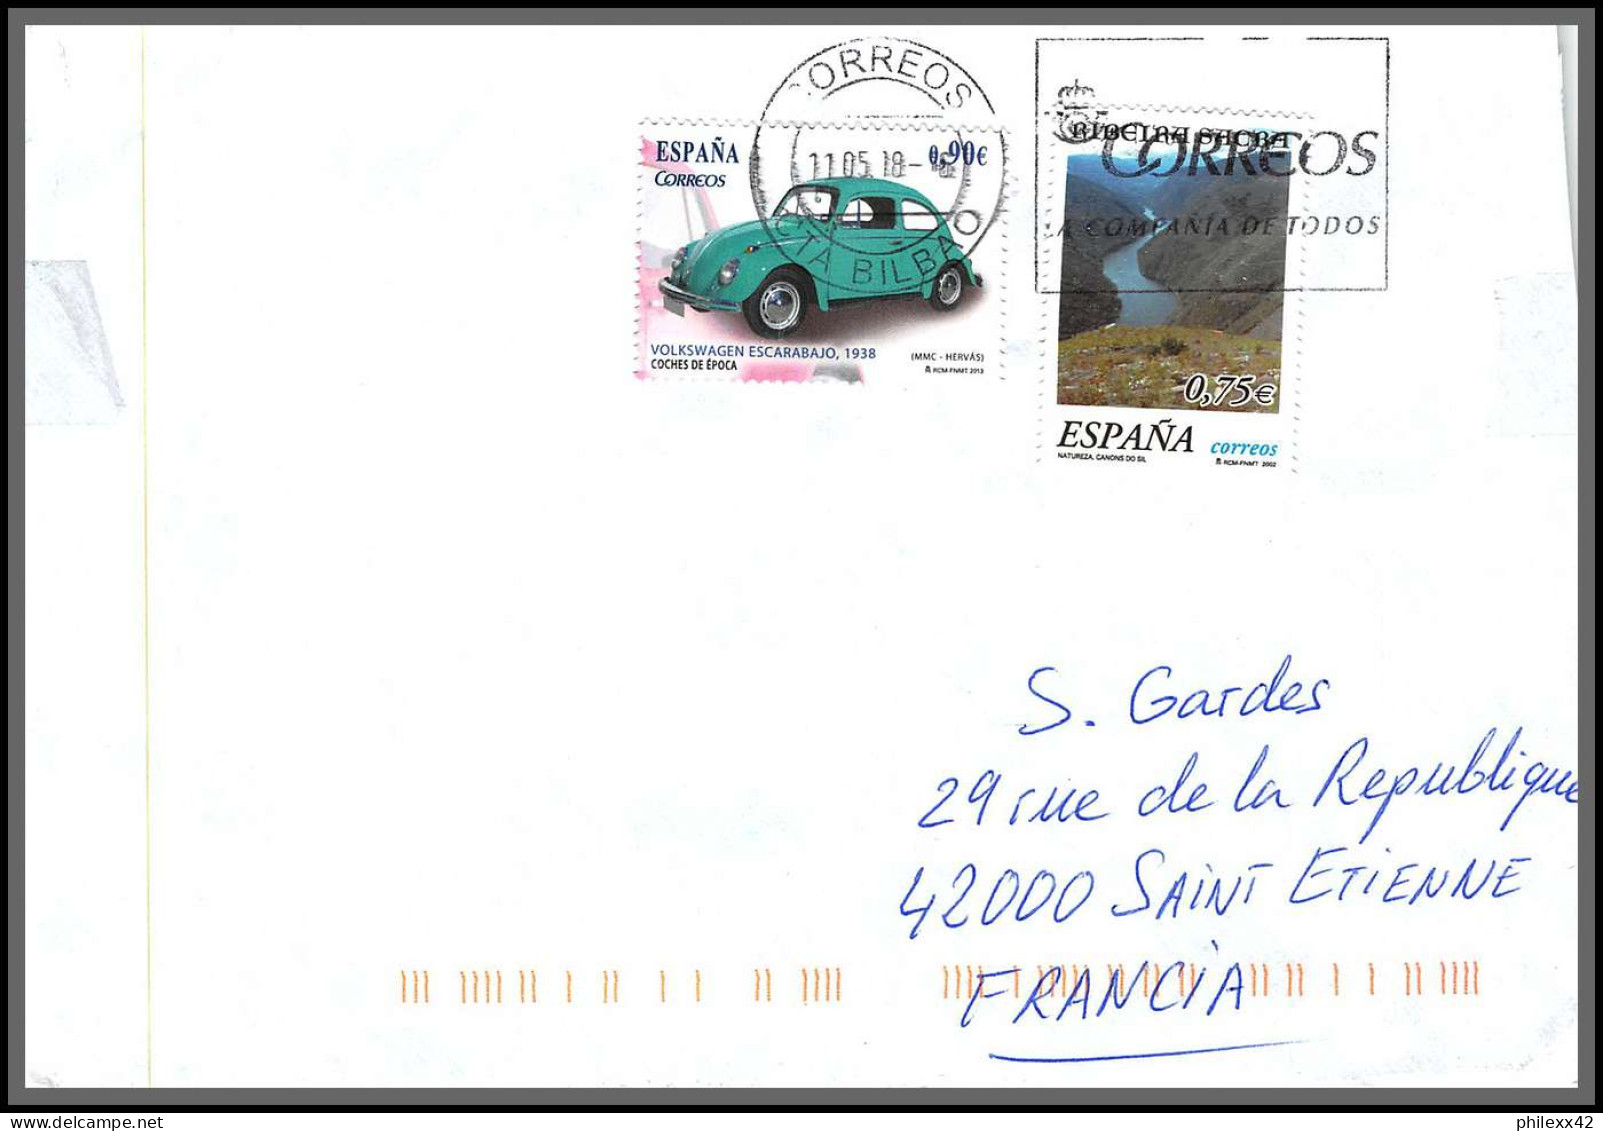 95948- lot de 24 lettres covers enveloppes de l'année 2000/2021 divers affranchissements espagne spain espana